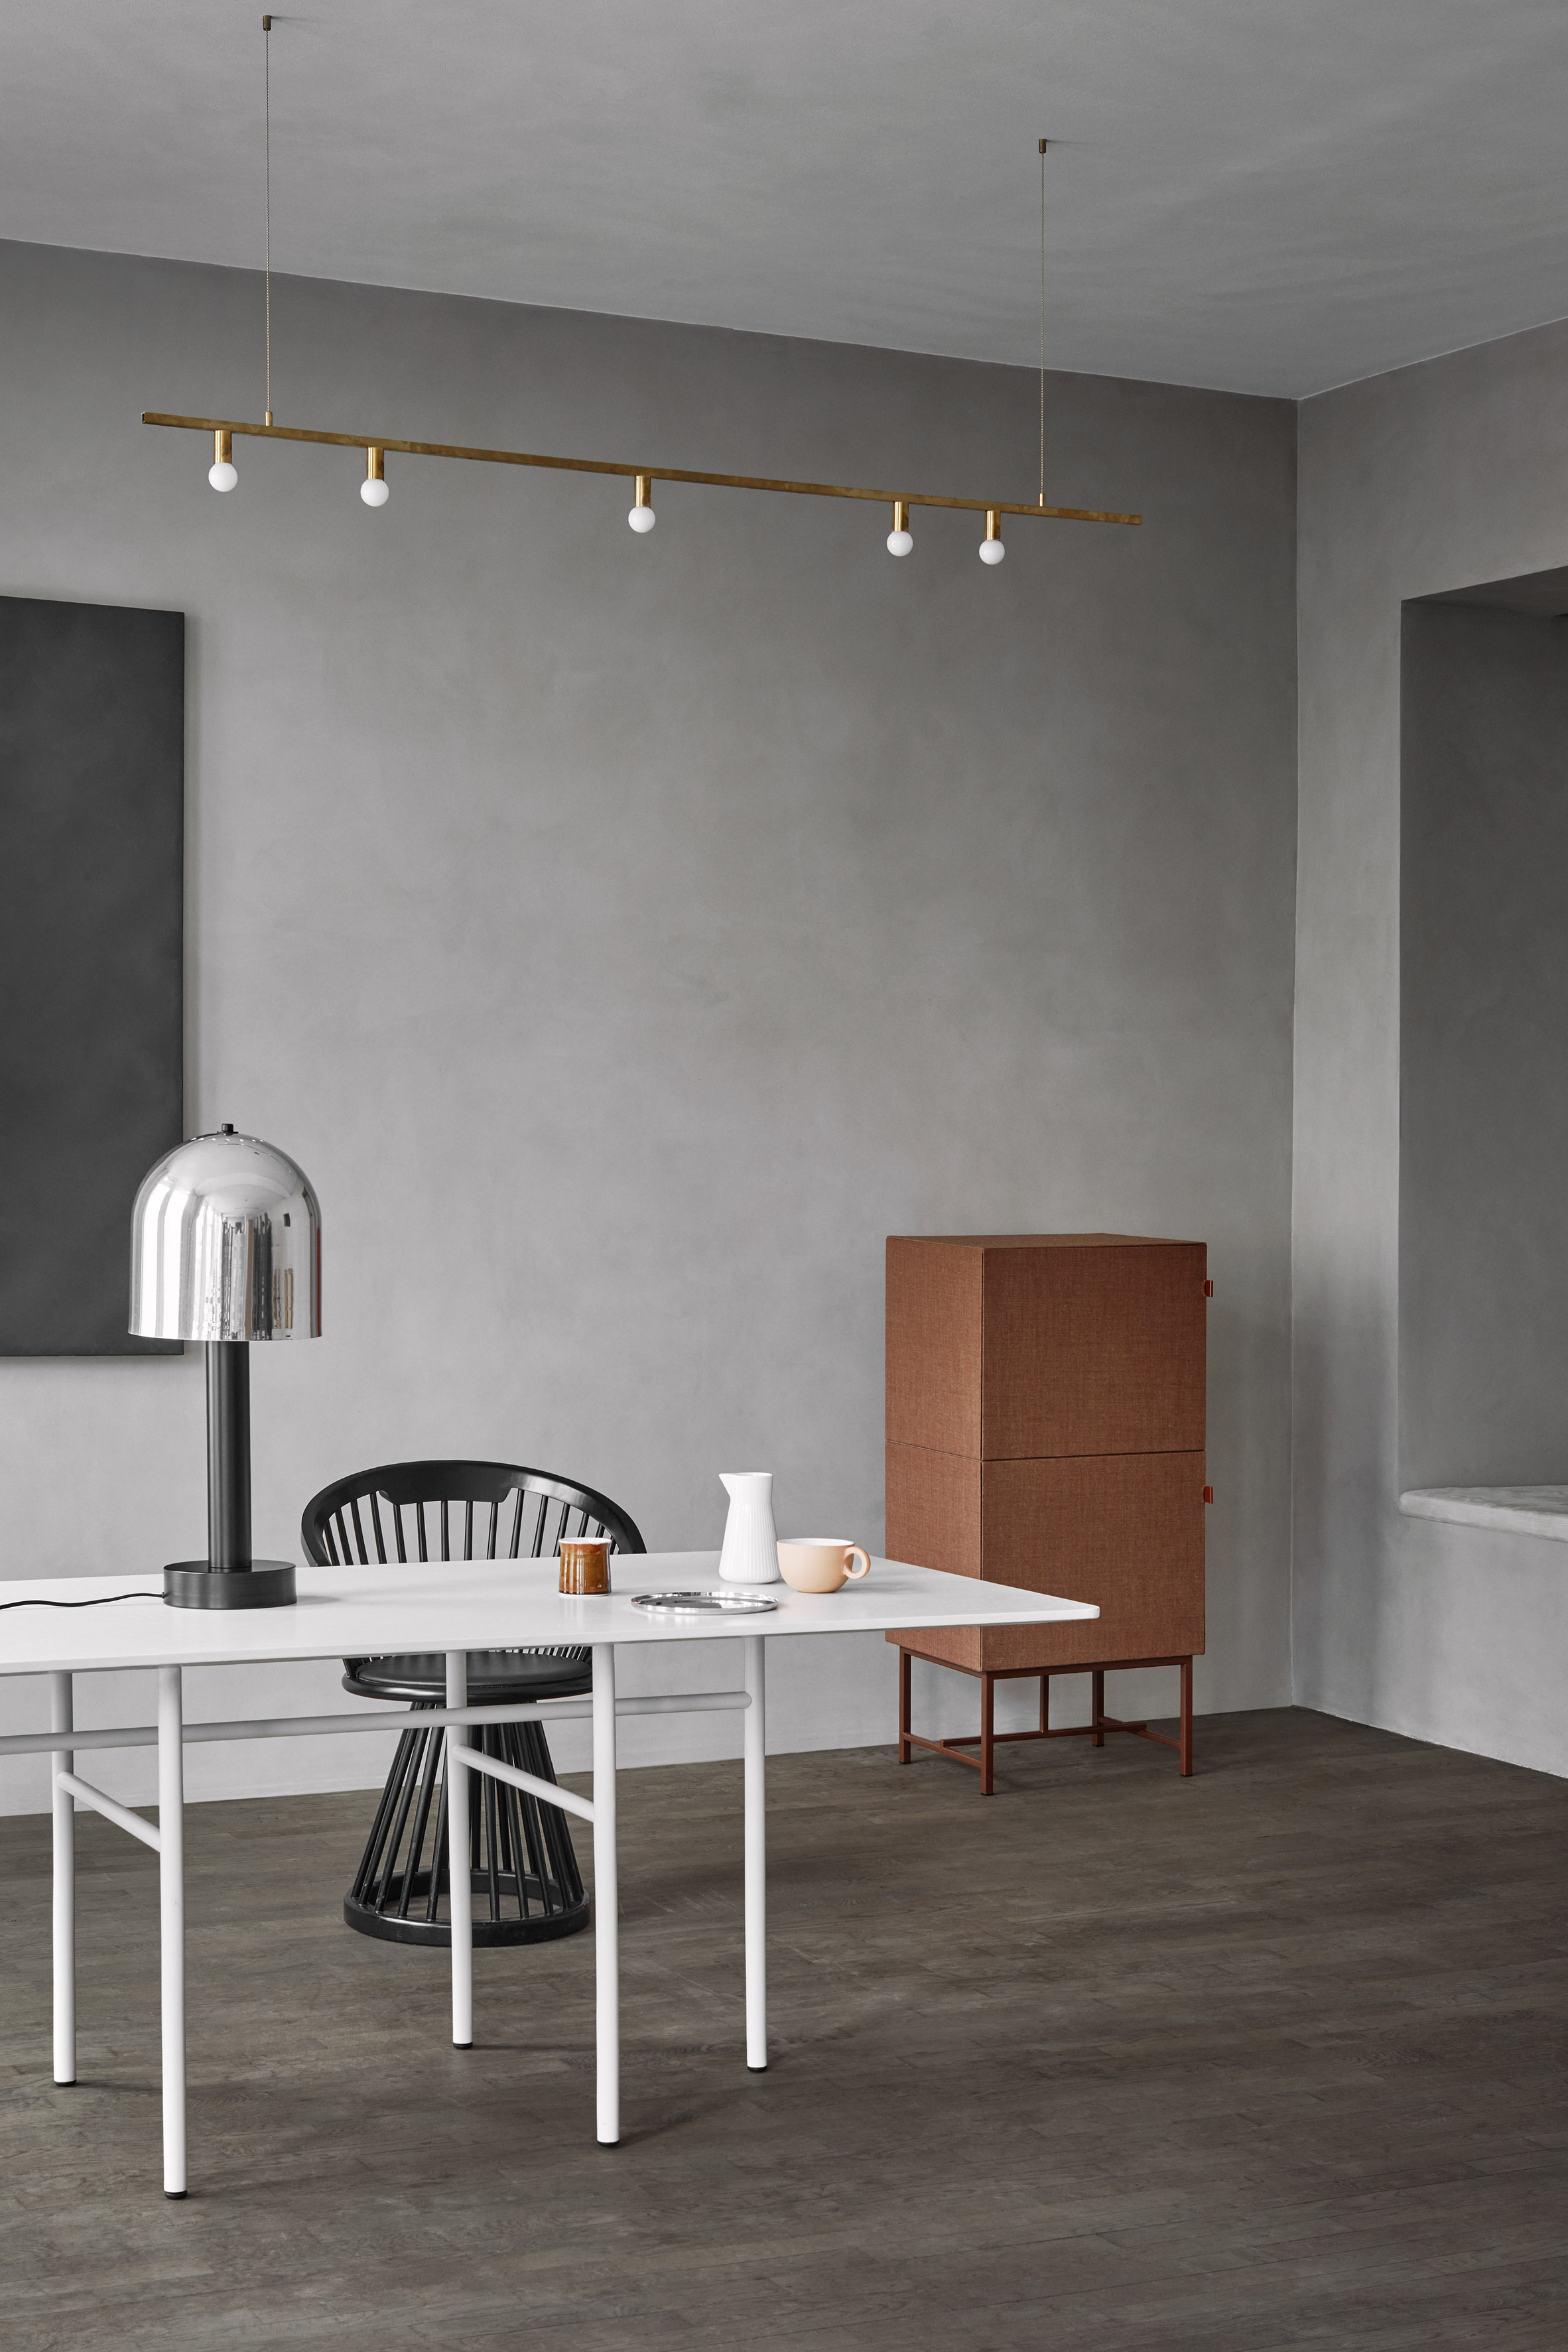 tone-cabinets-norm-architects-zilenzio-design-furniture-cabinets_dezeen_2364_col_5